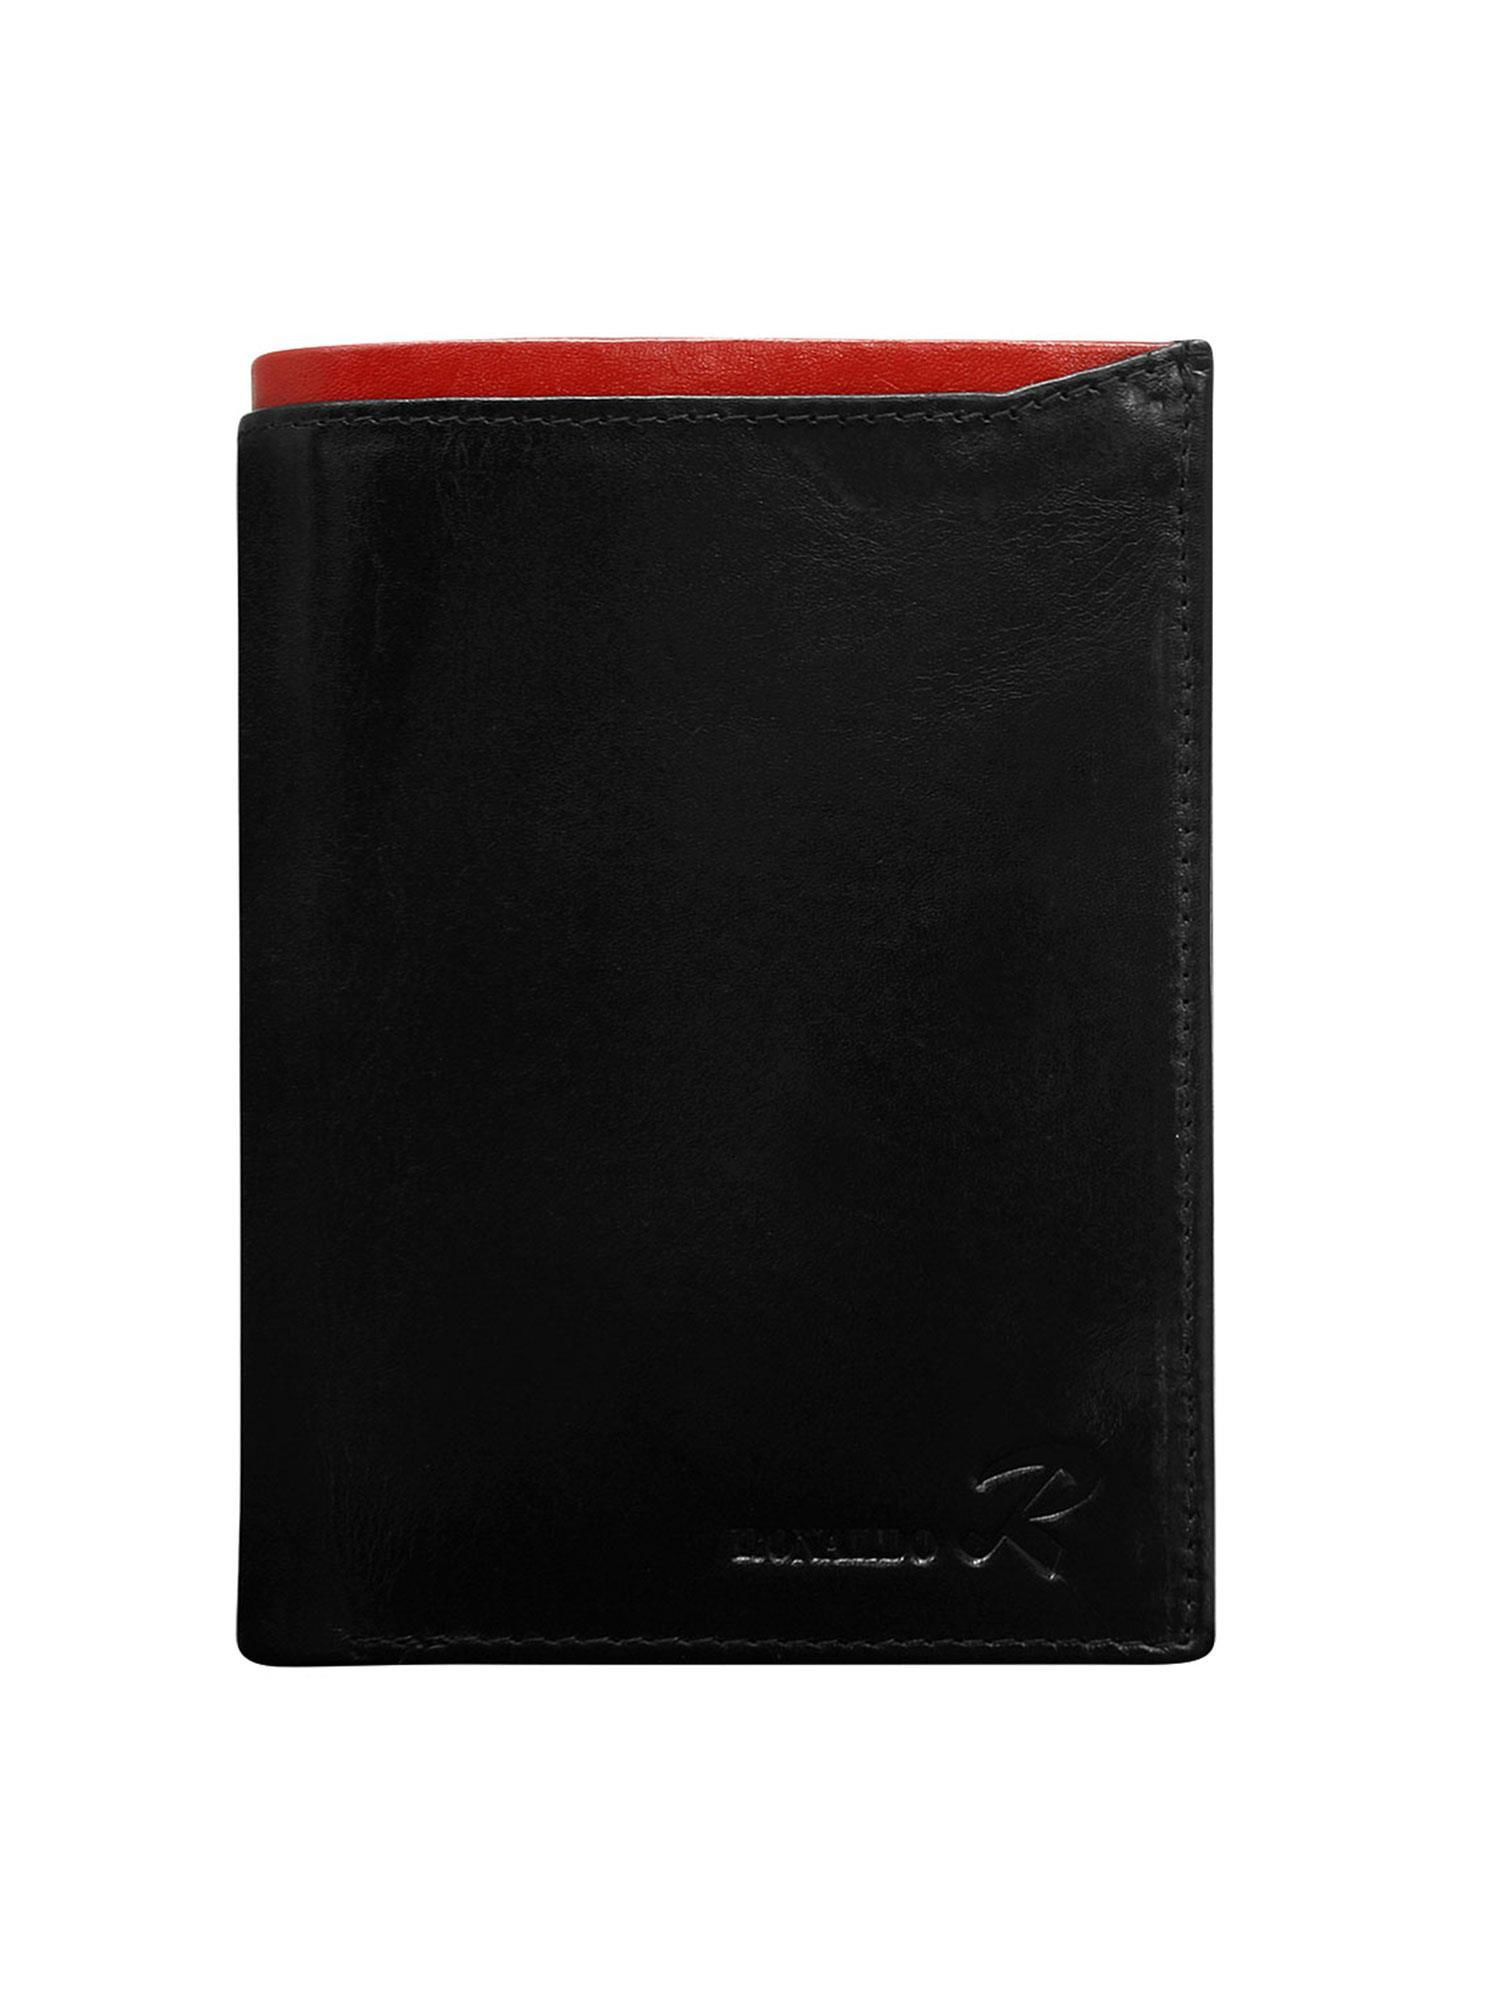 Peněženka CE PR N4 VT.81 černá a červená jedna velikost